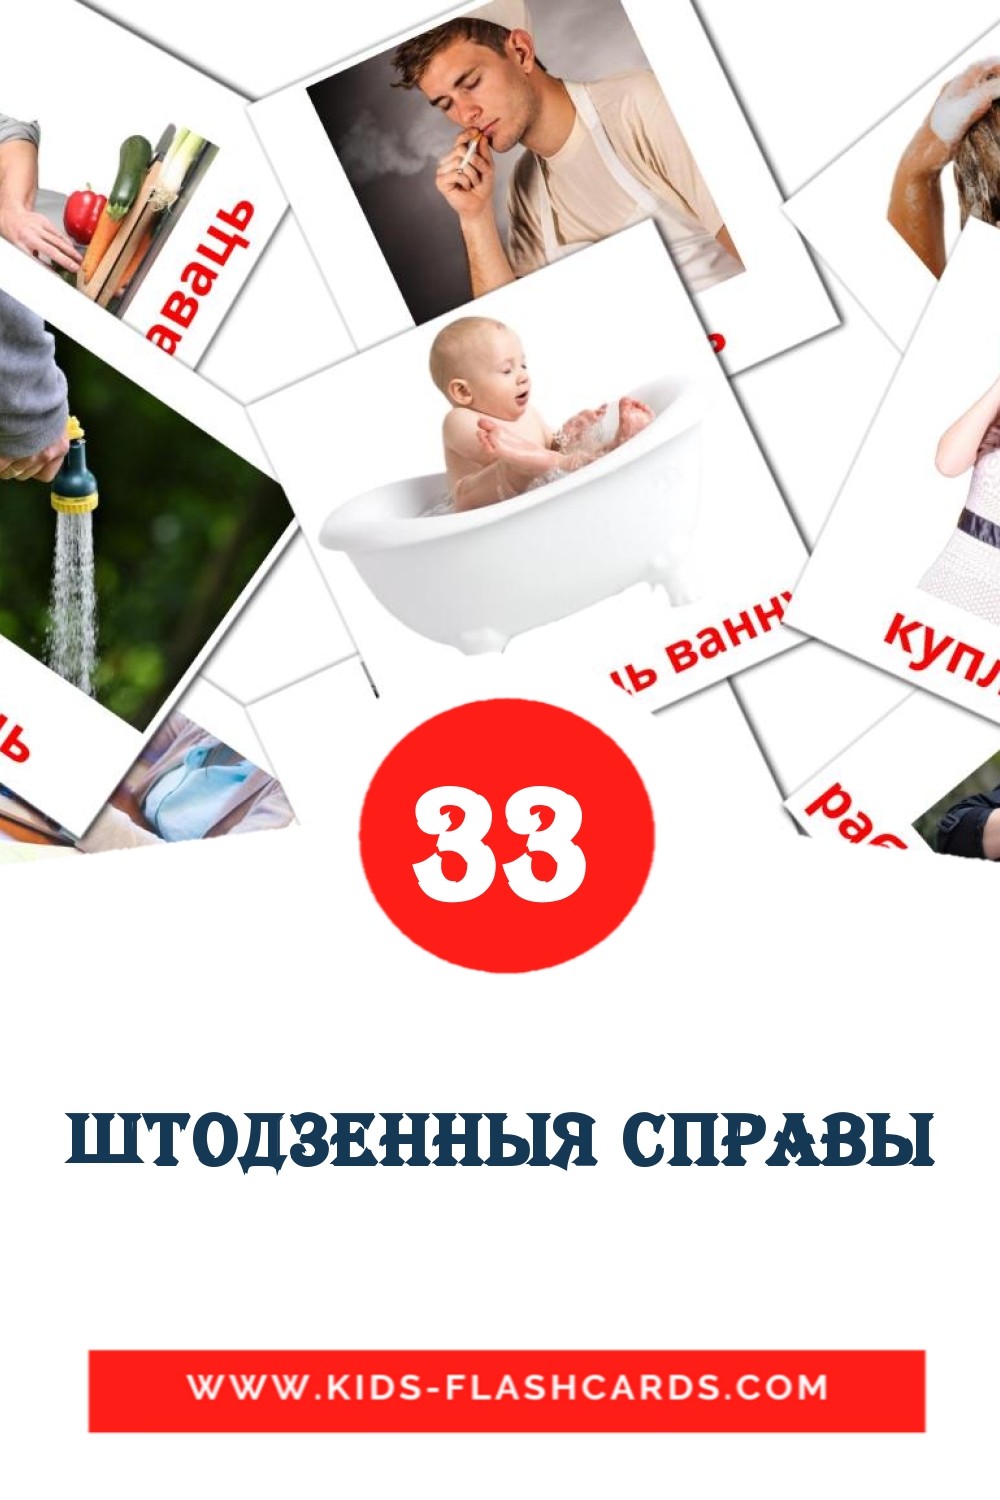 33 Cartões com Imagens de штодзенныя справы para Jardim de Infância em bielorrusso